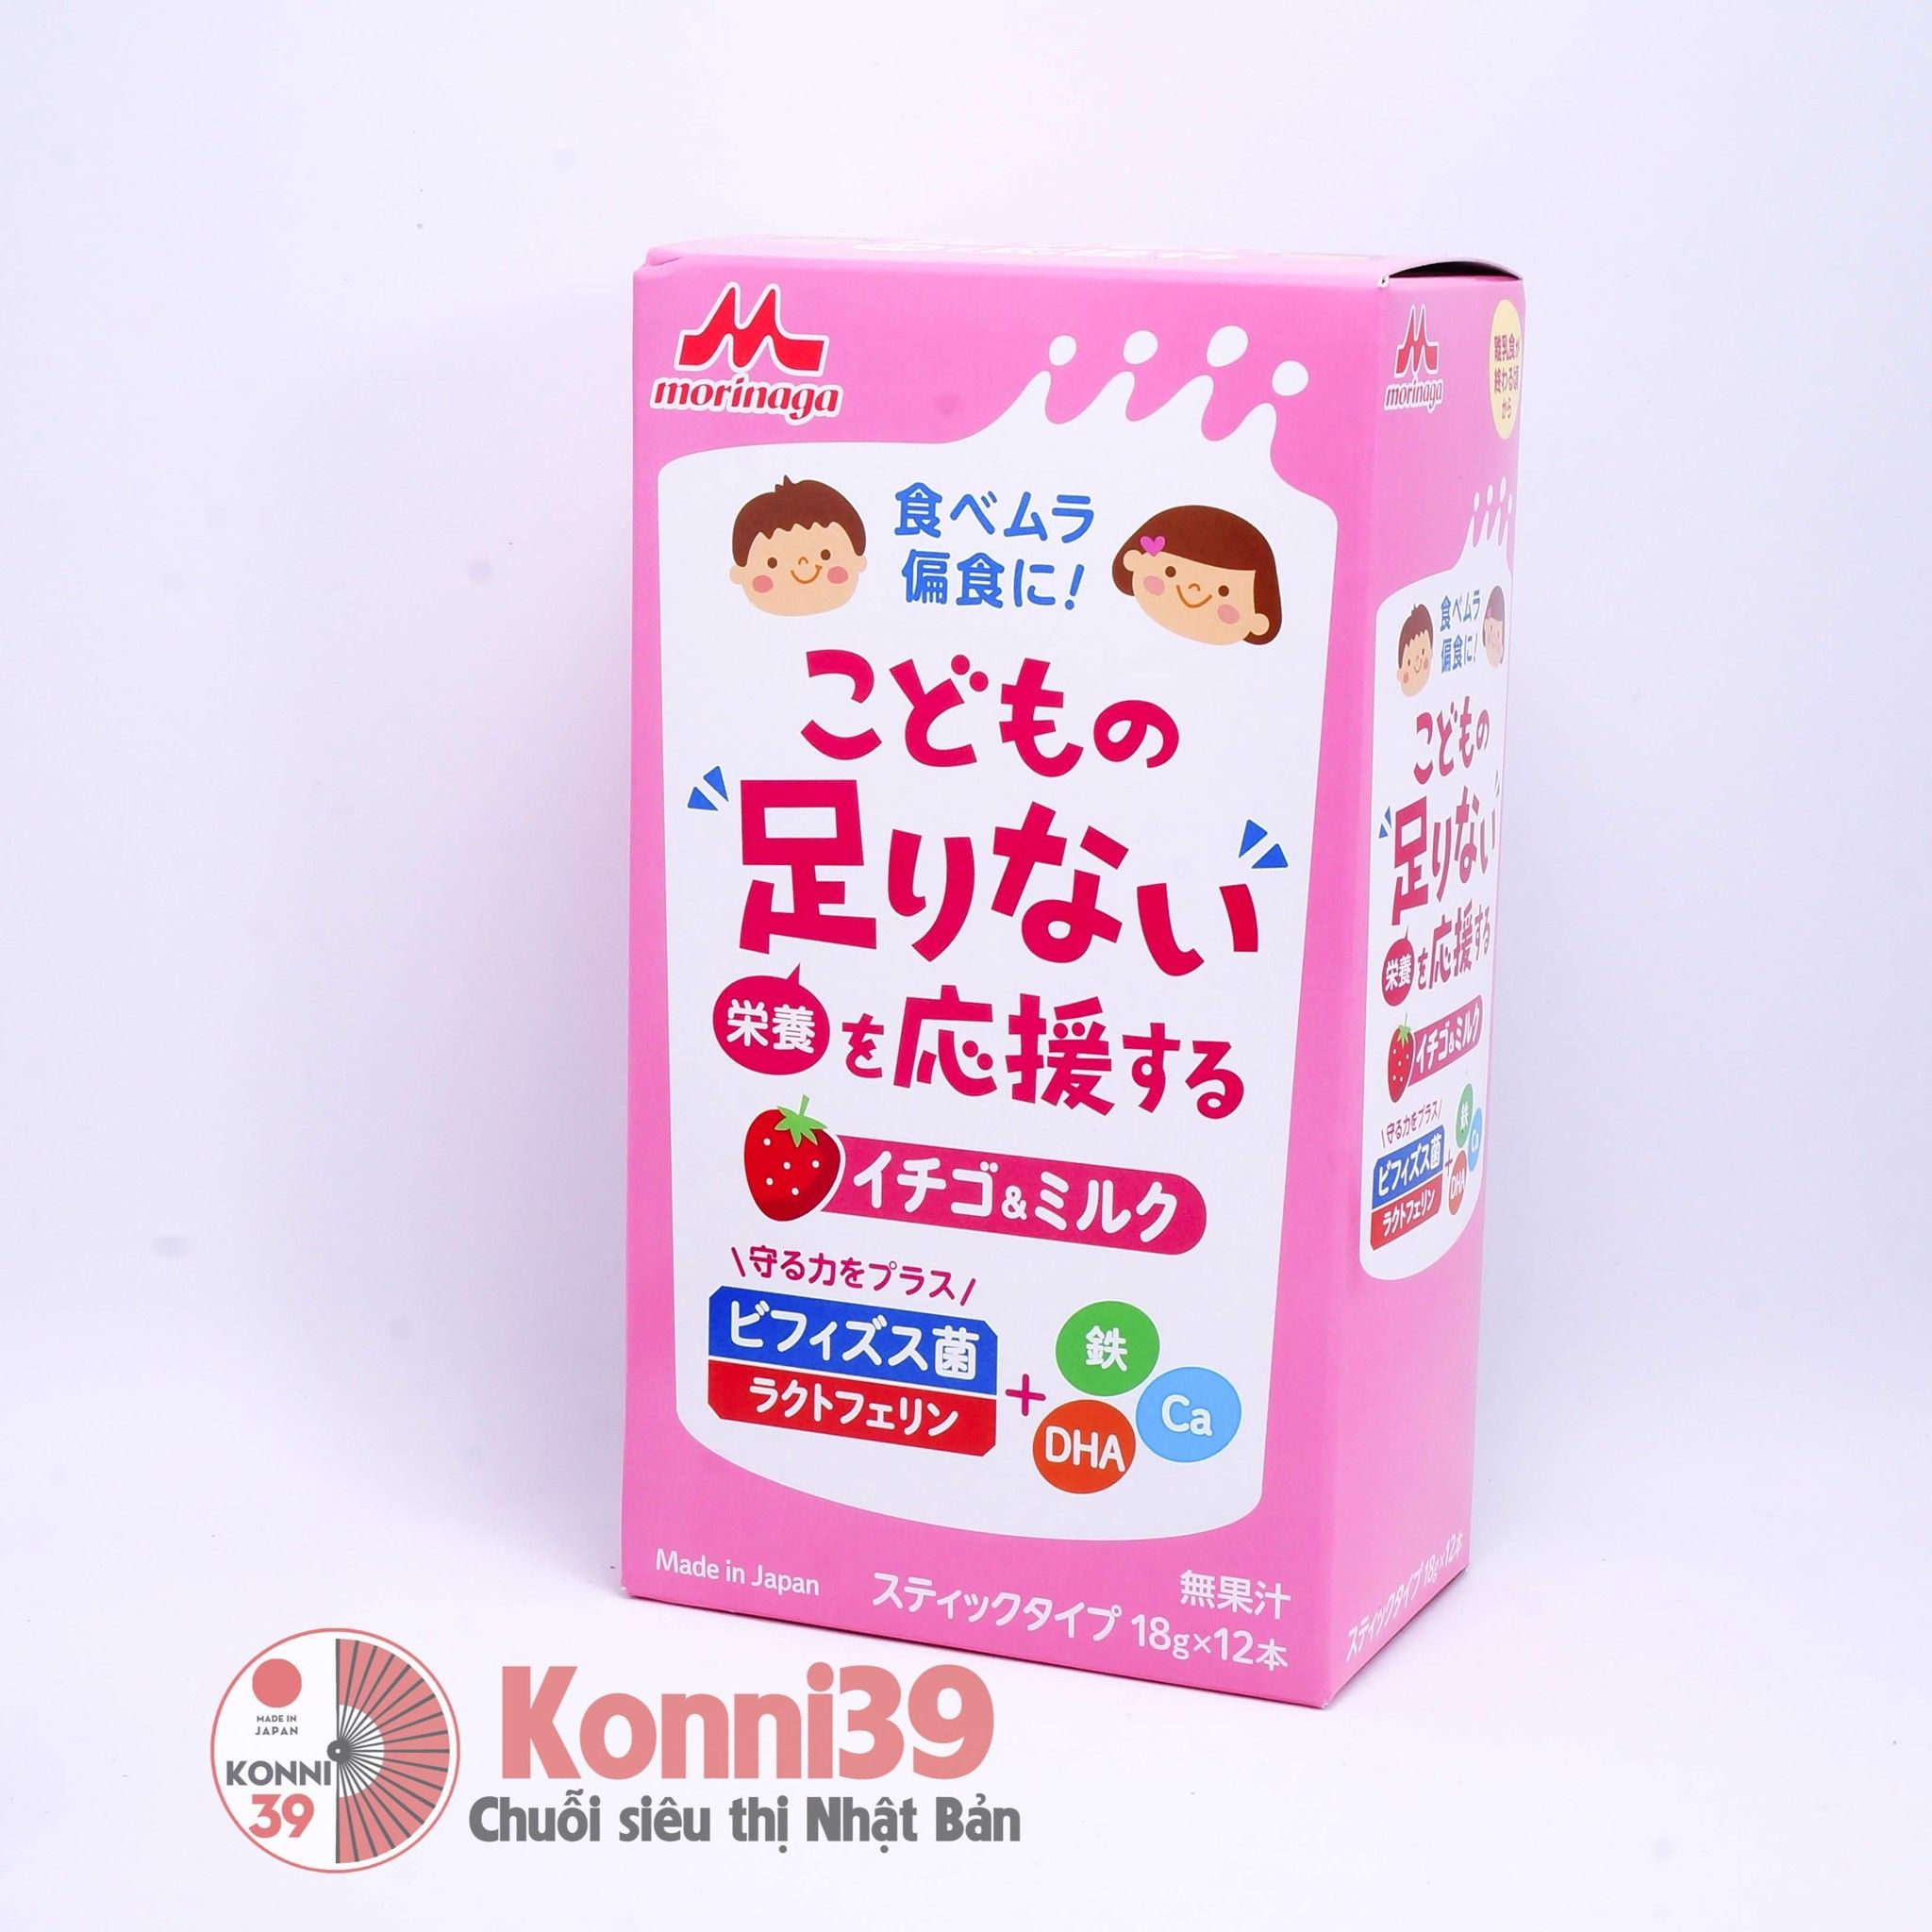 Sữa dinh dưỡng Morinaga 3-6 tuổi-Chuỗi siêu thị Nhật Bản - MADE IN JAPAN Konni39 tại Việt Nam